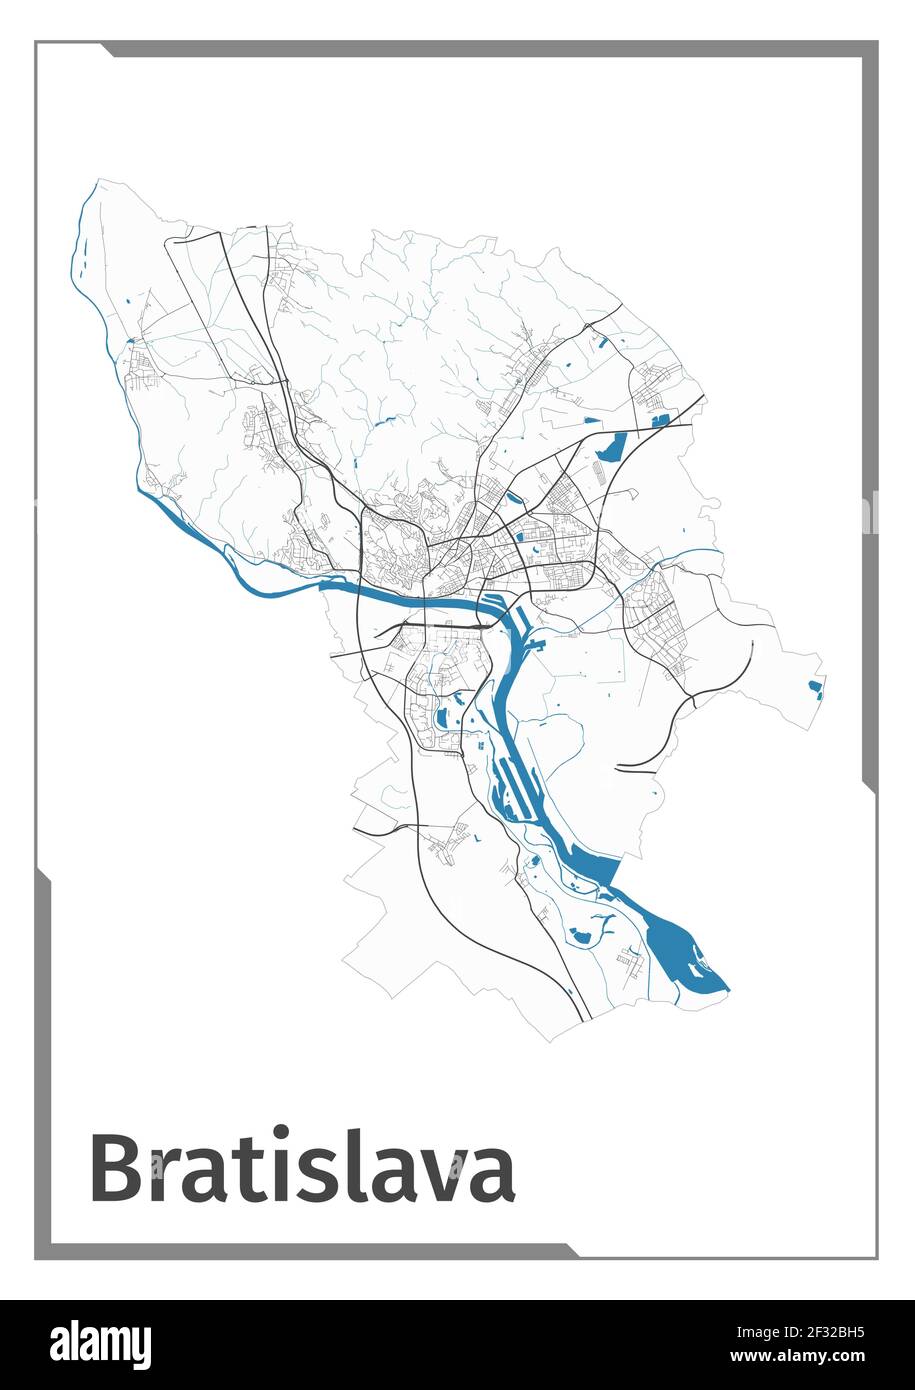 Bratislava carte poster, zone administrative vue plan. Plan noir, blanc et bleu de la ville de Bratislava avec ses rivières et ses rues. Contour de la silhouette Illustration de Vecteur